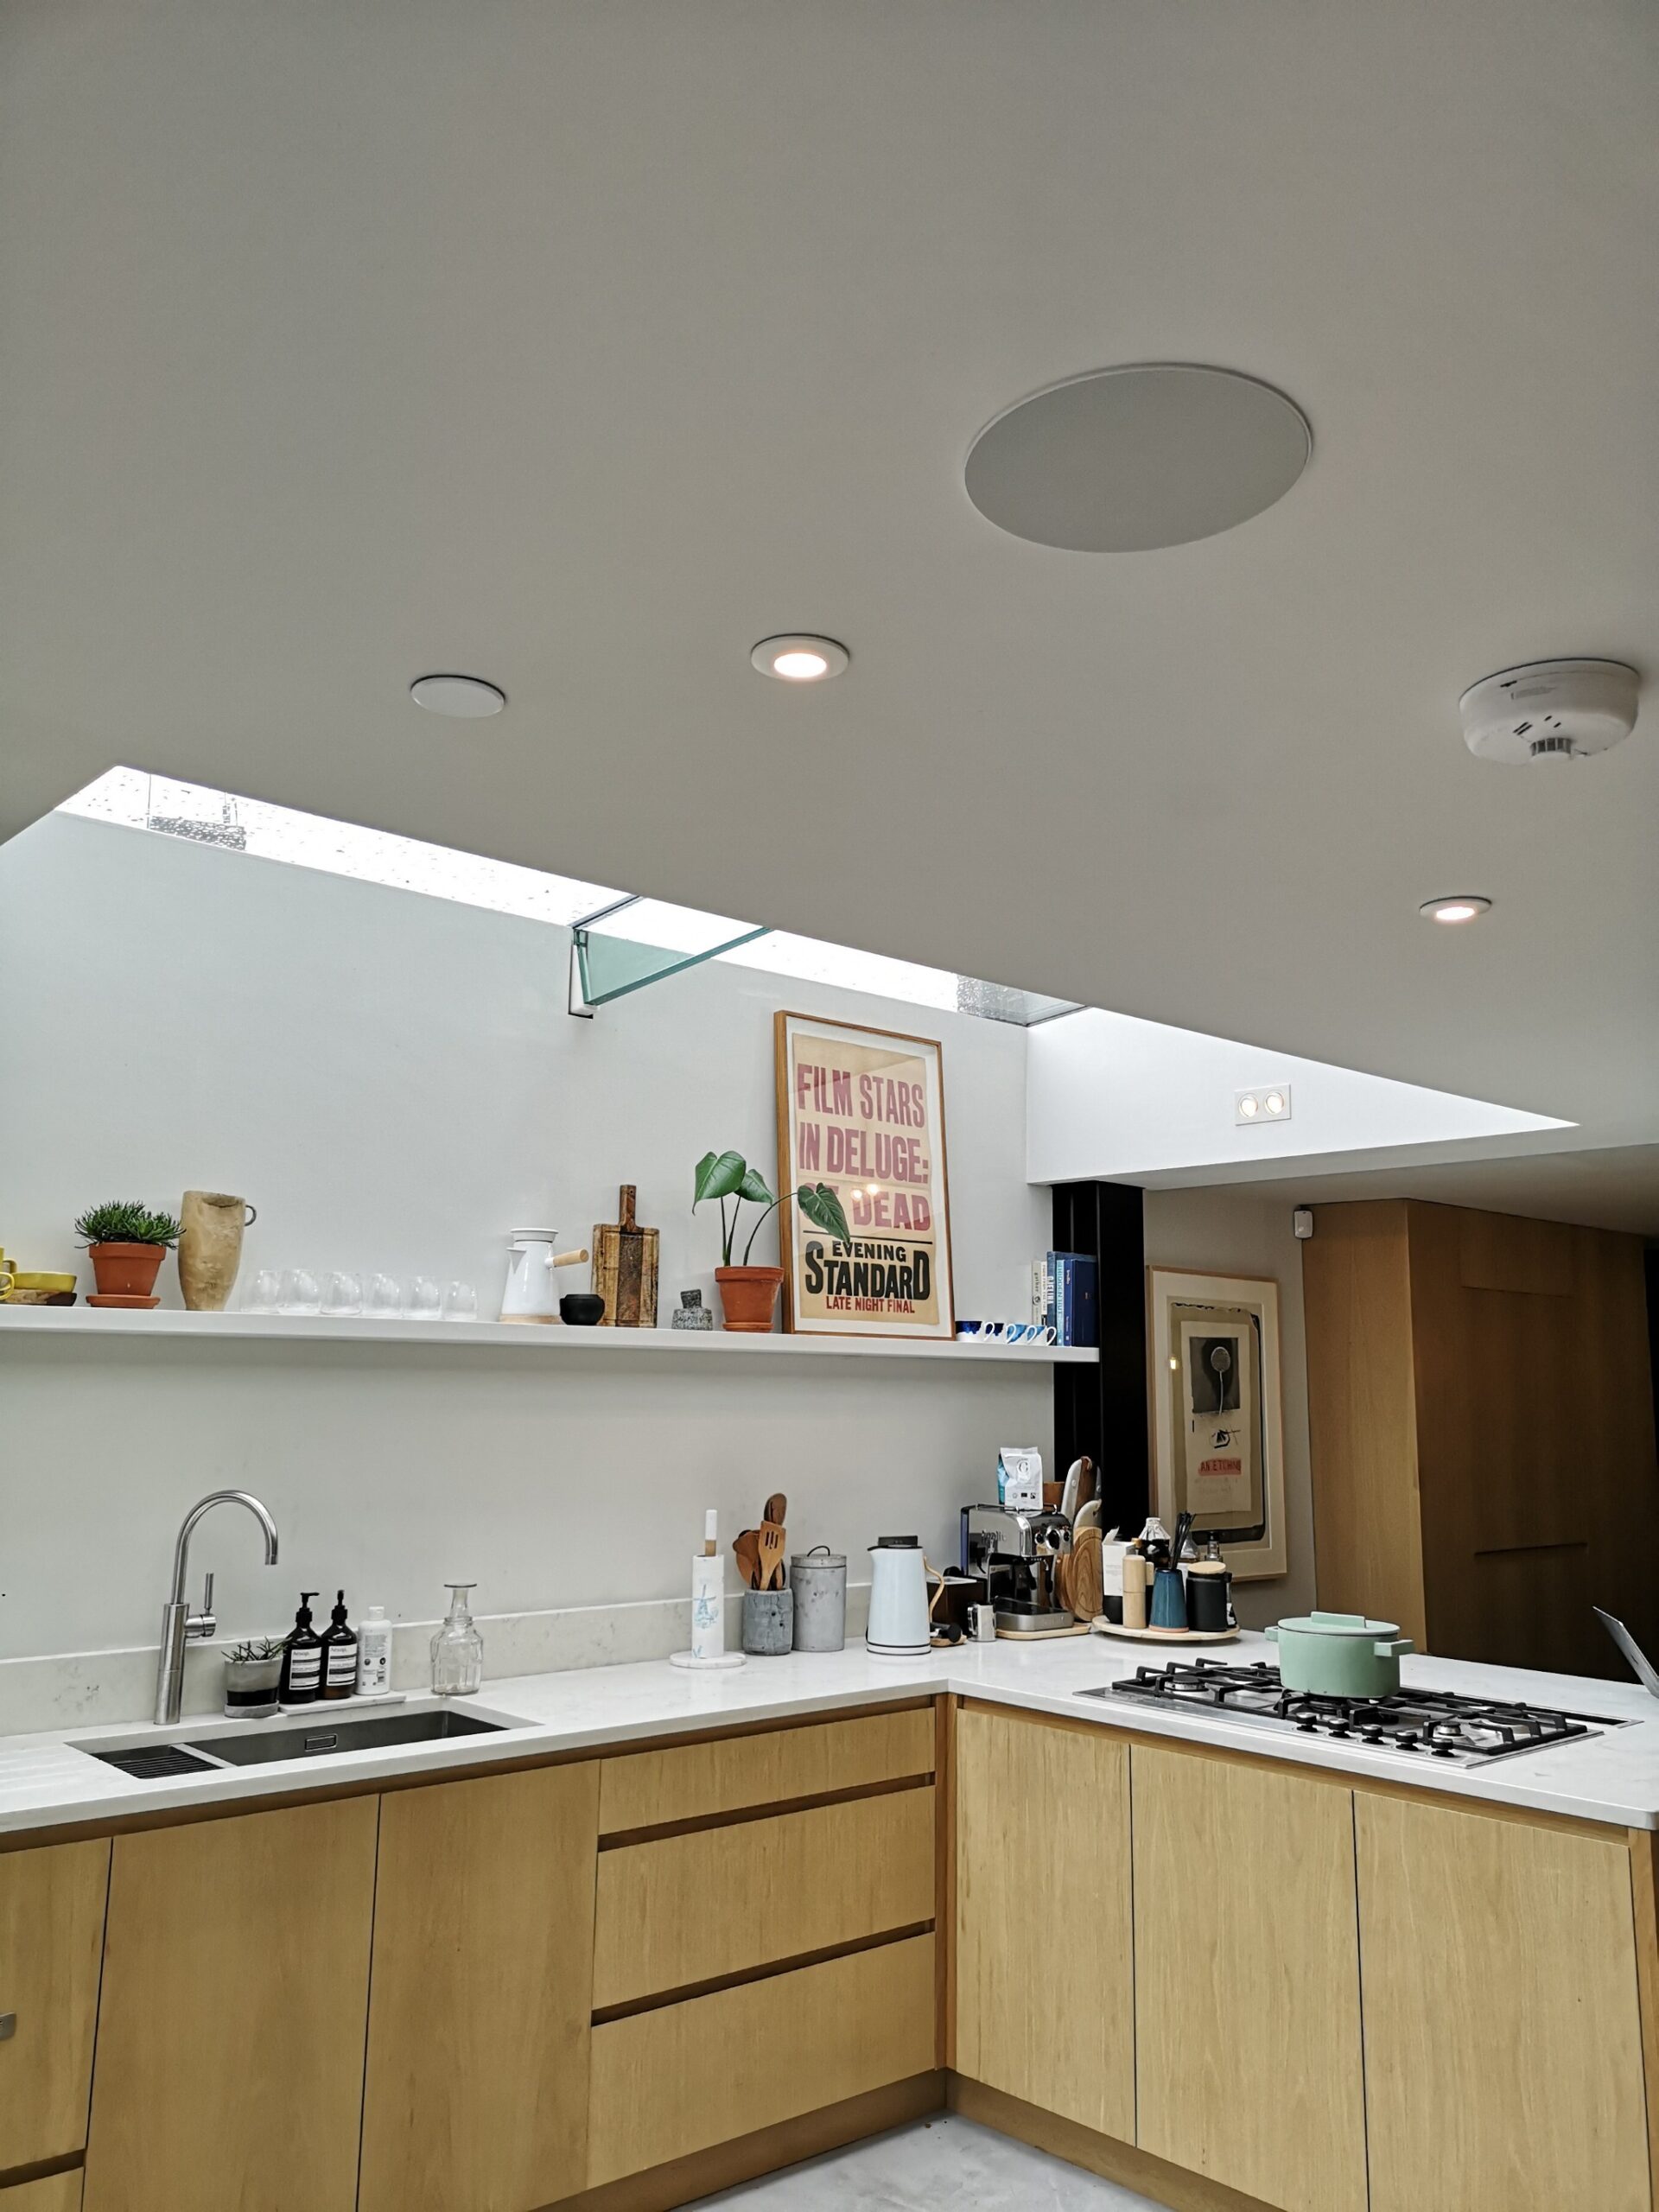 Kitchen showing in-ceiling Klipsch speaker and downlights